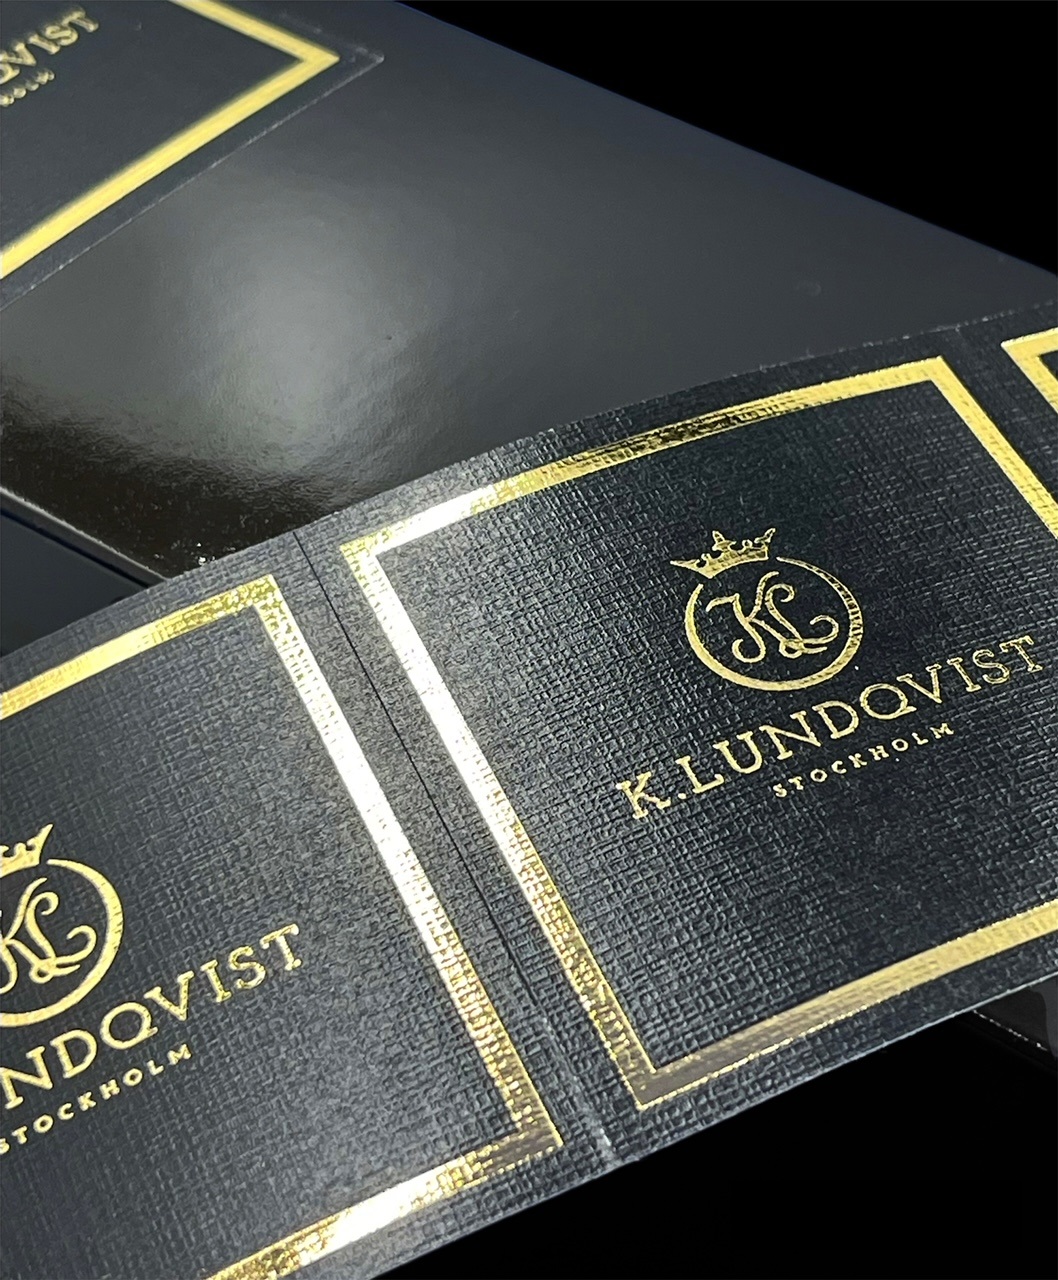 K. Lundqvist Doftpinnar - Golden Oud - 100 ml